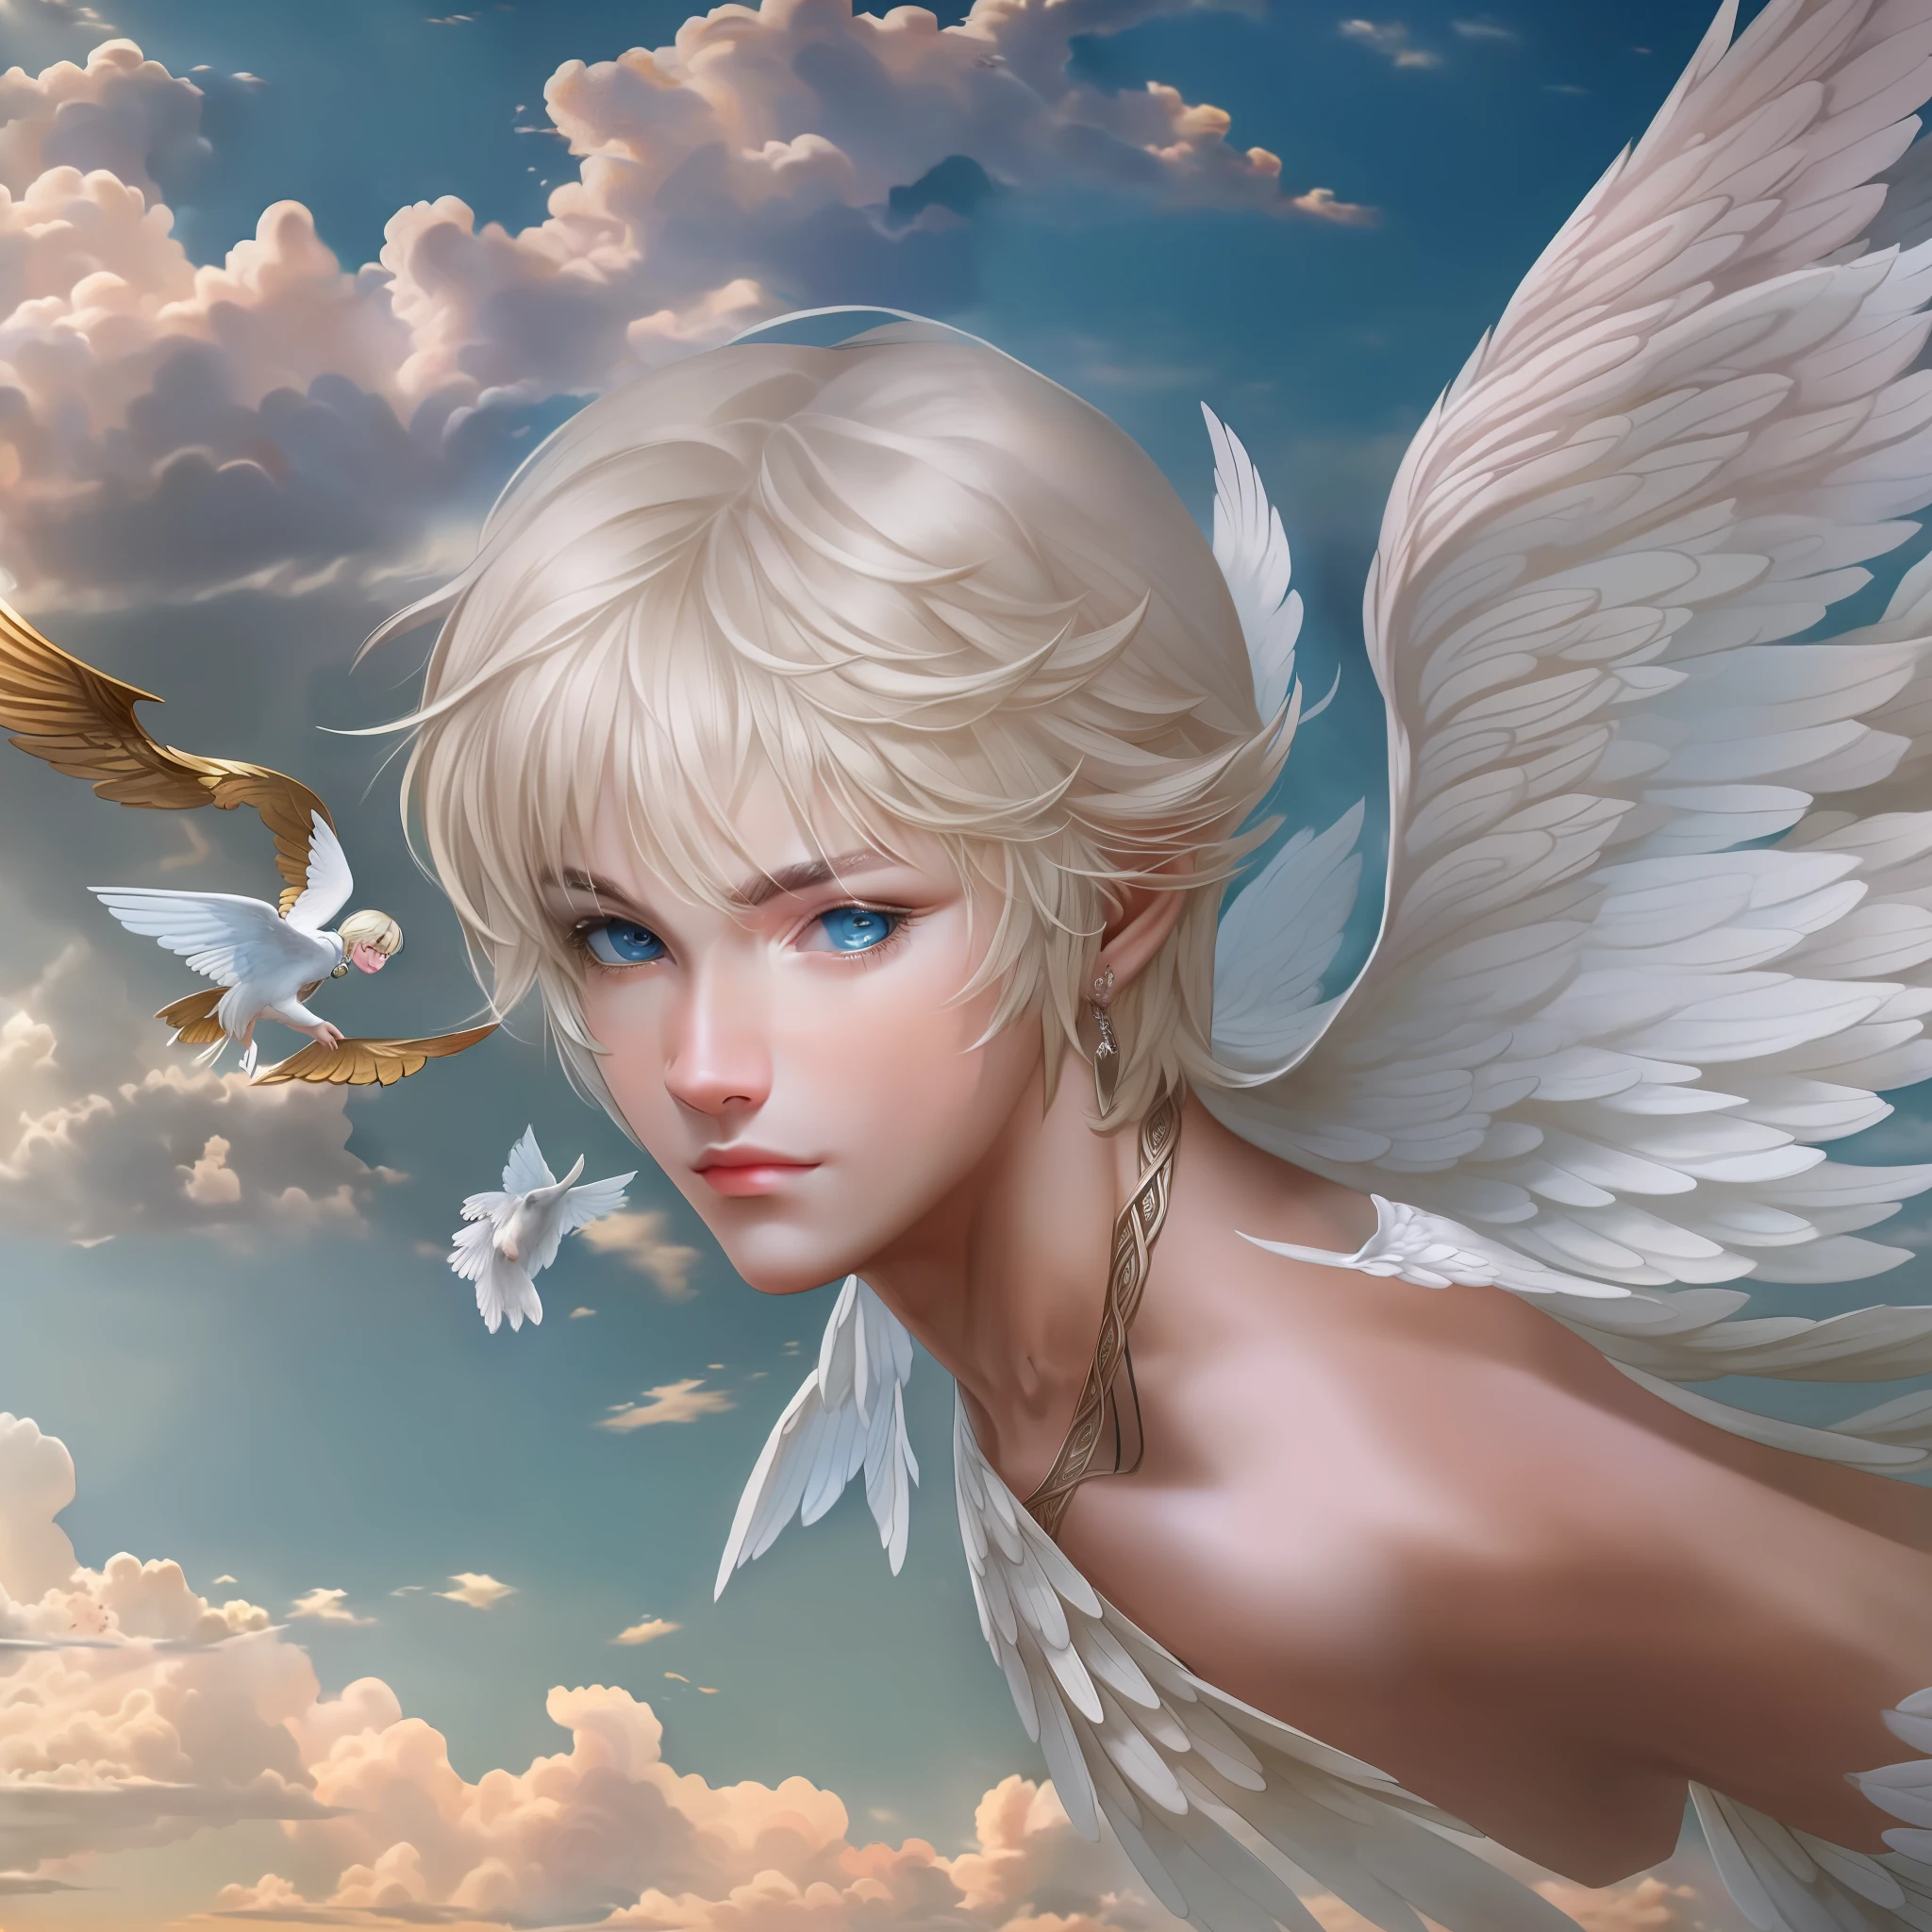 (Meisterwerk) 8k Auflösung, schöner Junge fliegt mit großen Flügeln, blonde kurze Bob Haare, aschblaue Augen, Nettes Gesicht, Fantasy-Stil,